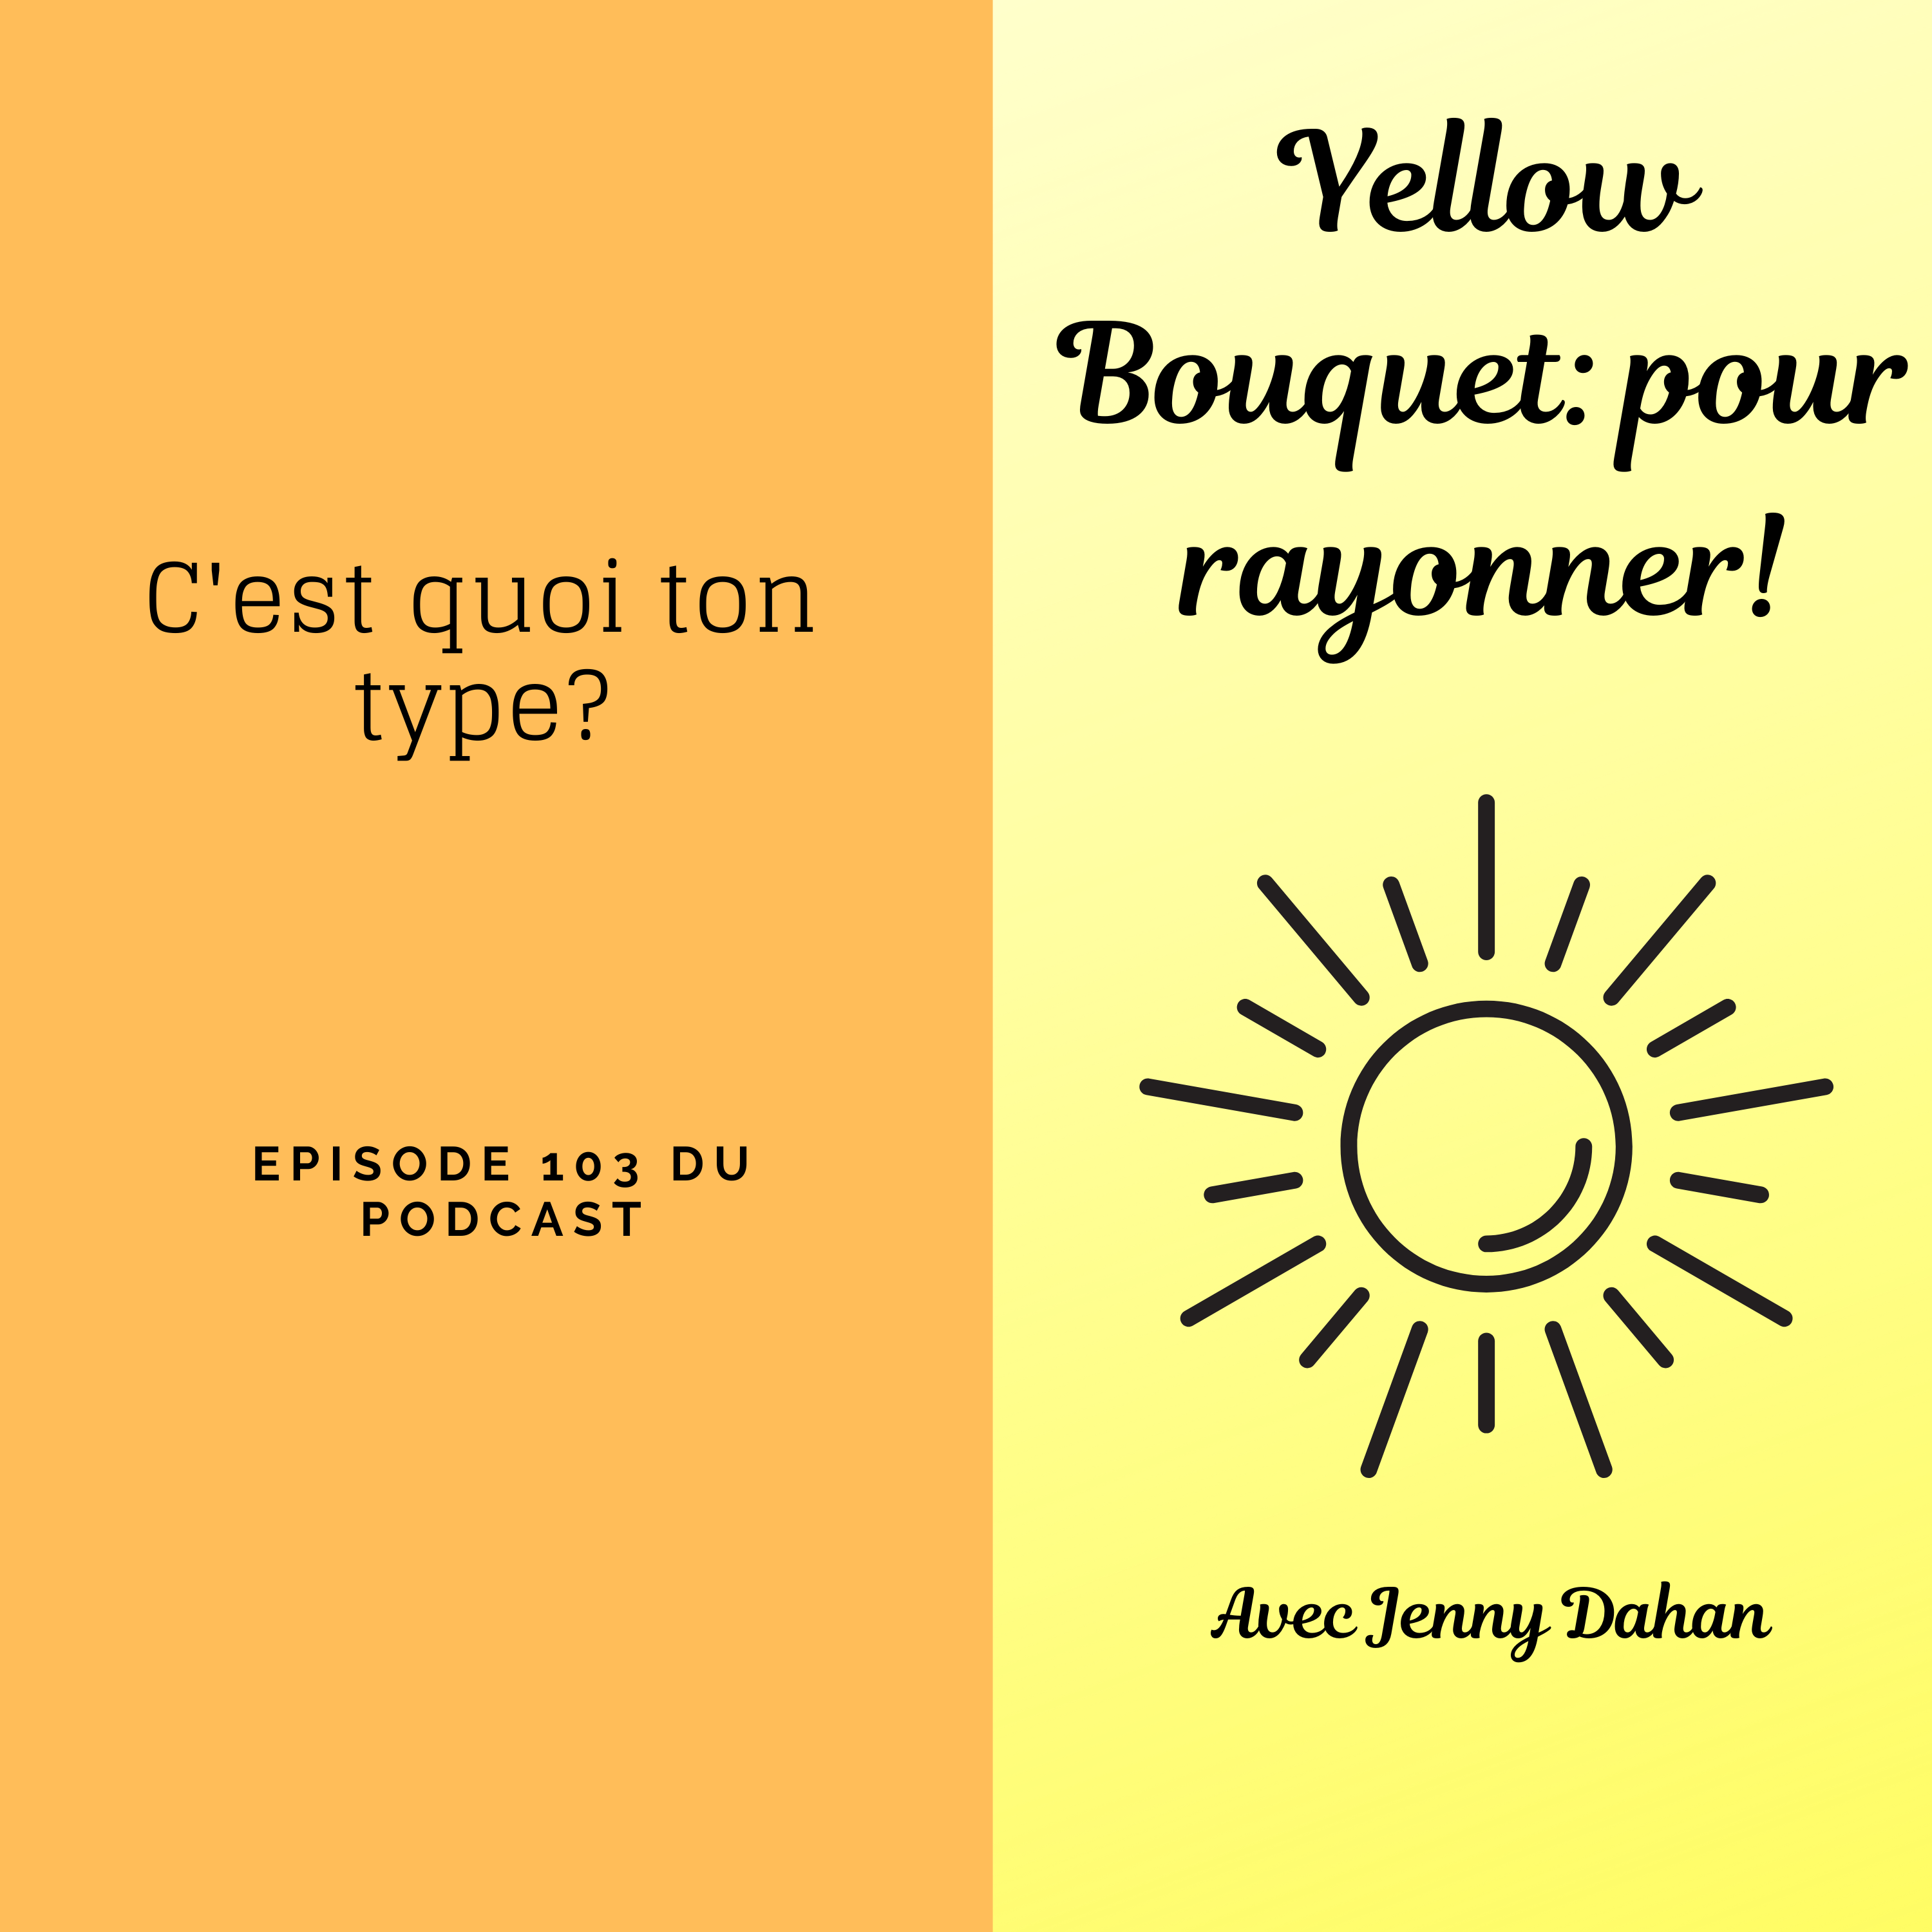 Yellow Bouquet: pour rayonner! épisode 103